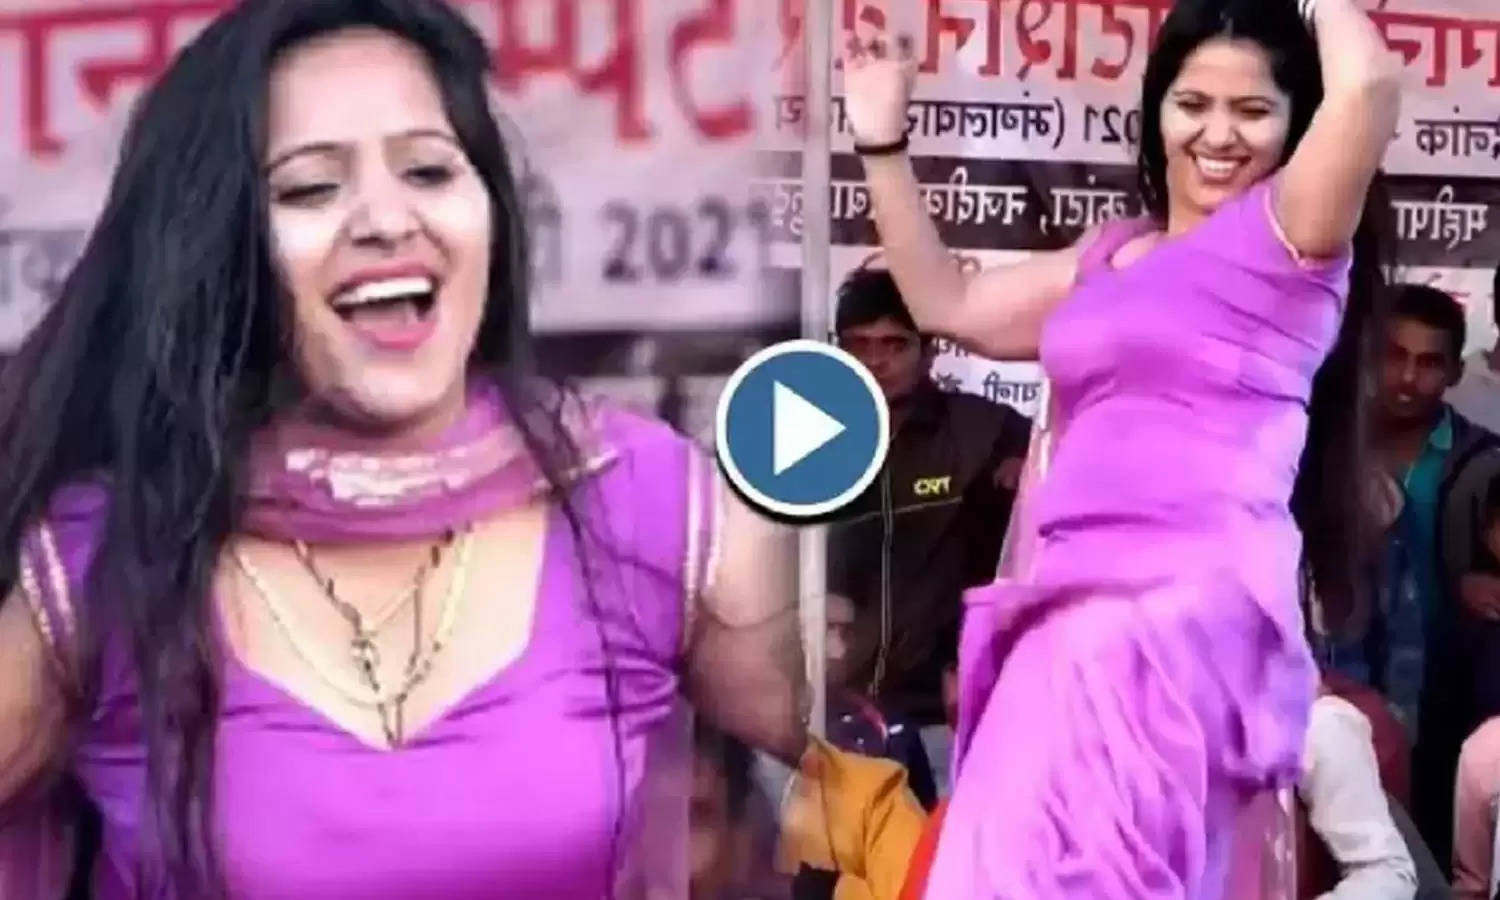 Haryanvi Video: सपना का रुतबा खत्म! रचना ने हॉट अंदाज में दिखाए ऐसे ठुमके की भीड़ हुई बेकाबू, देखें वीडियो